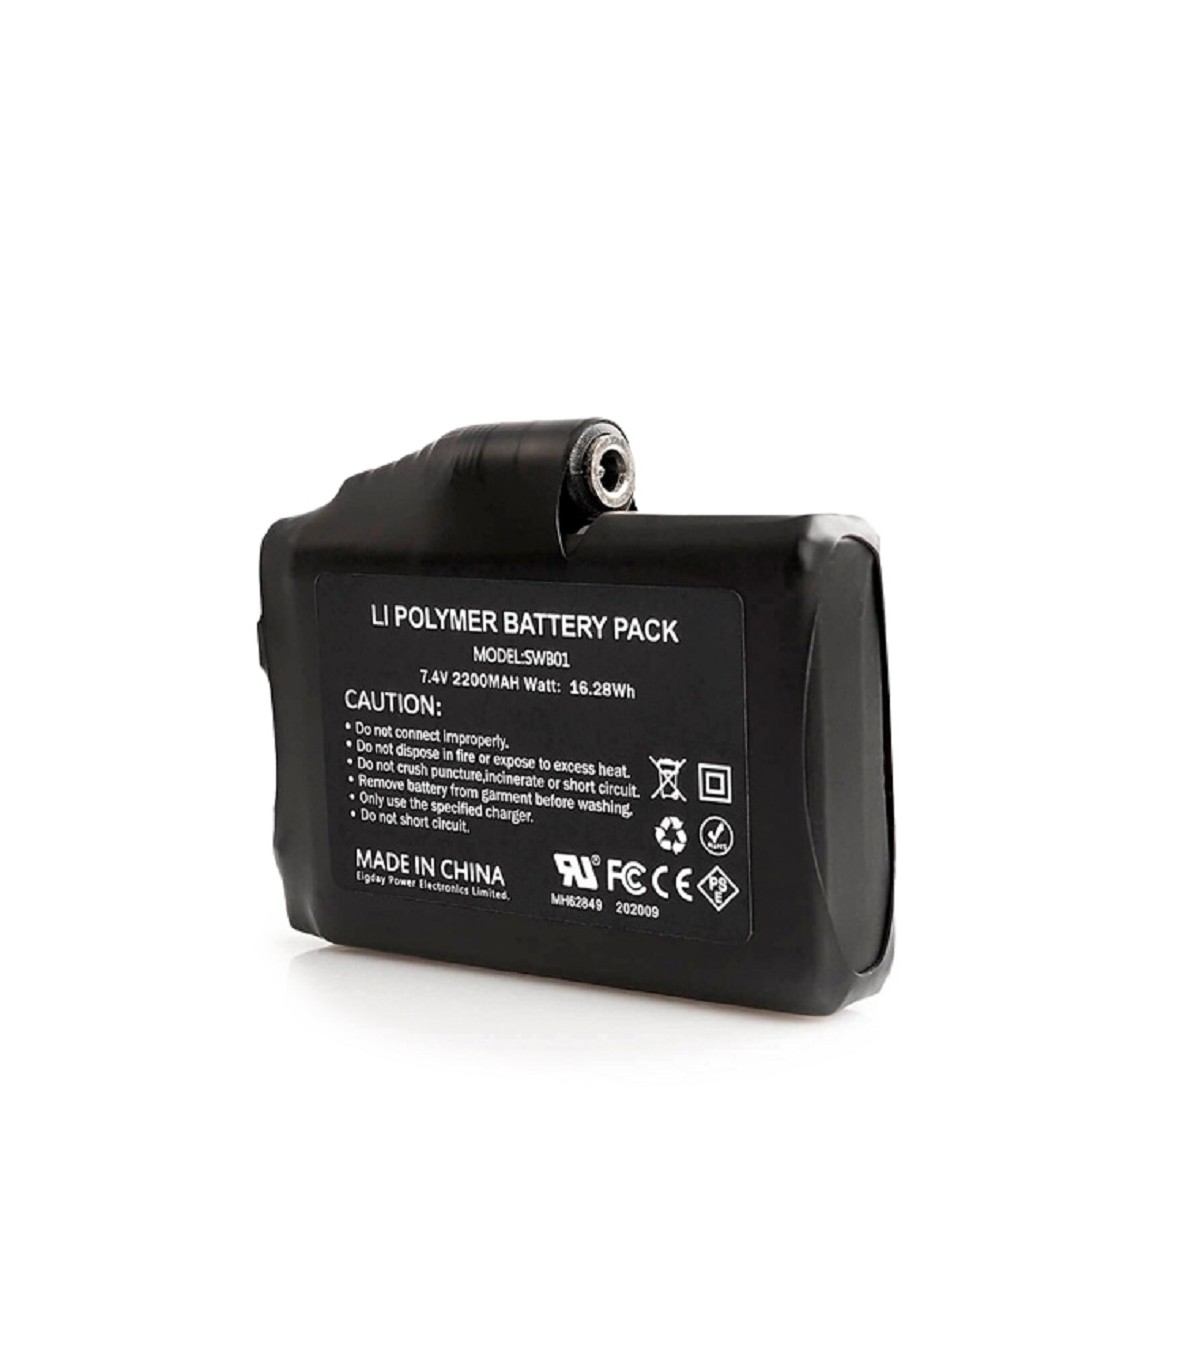 Batterie rechargeable pour Gants chauffant 7.4V 2200mAh